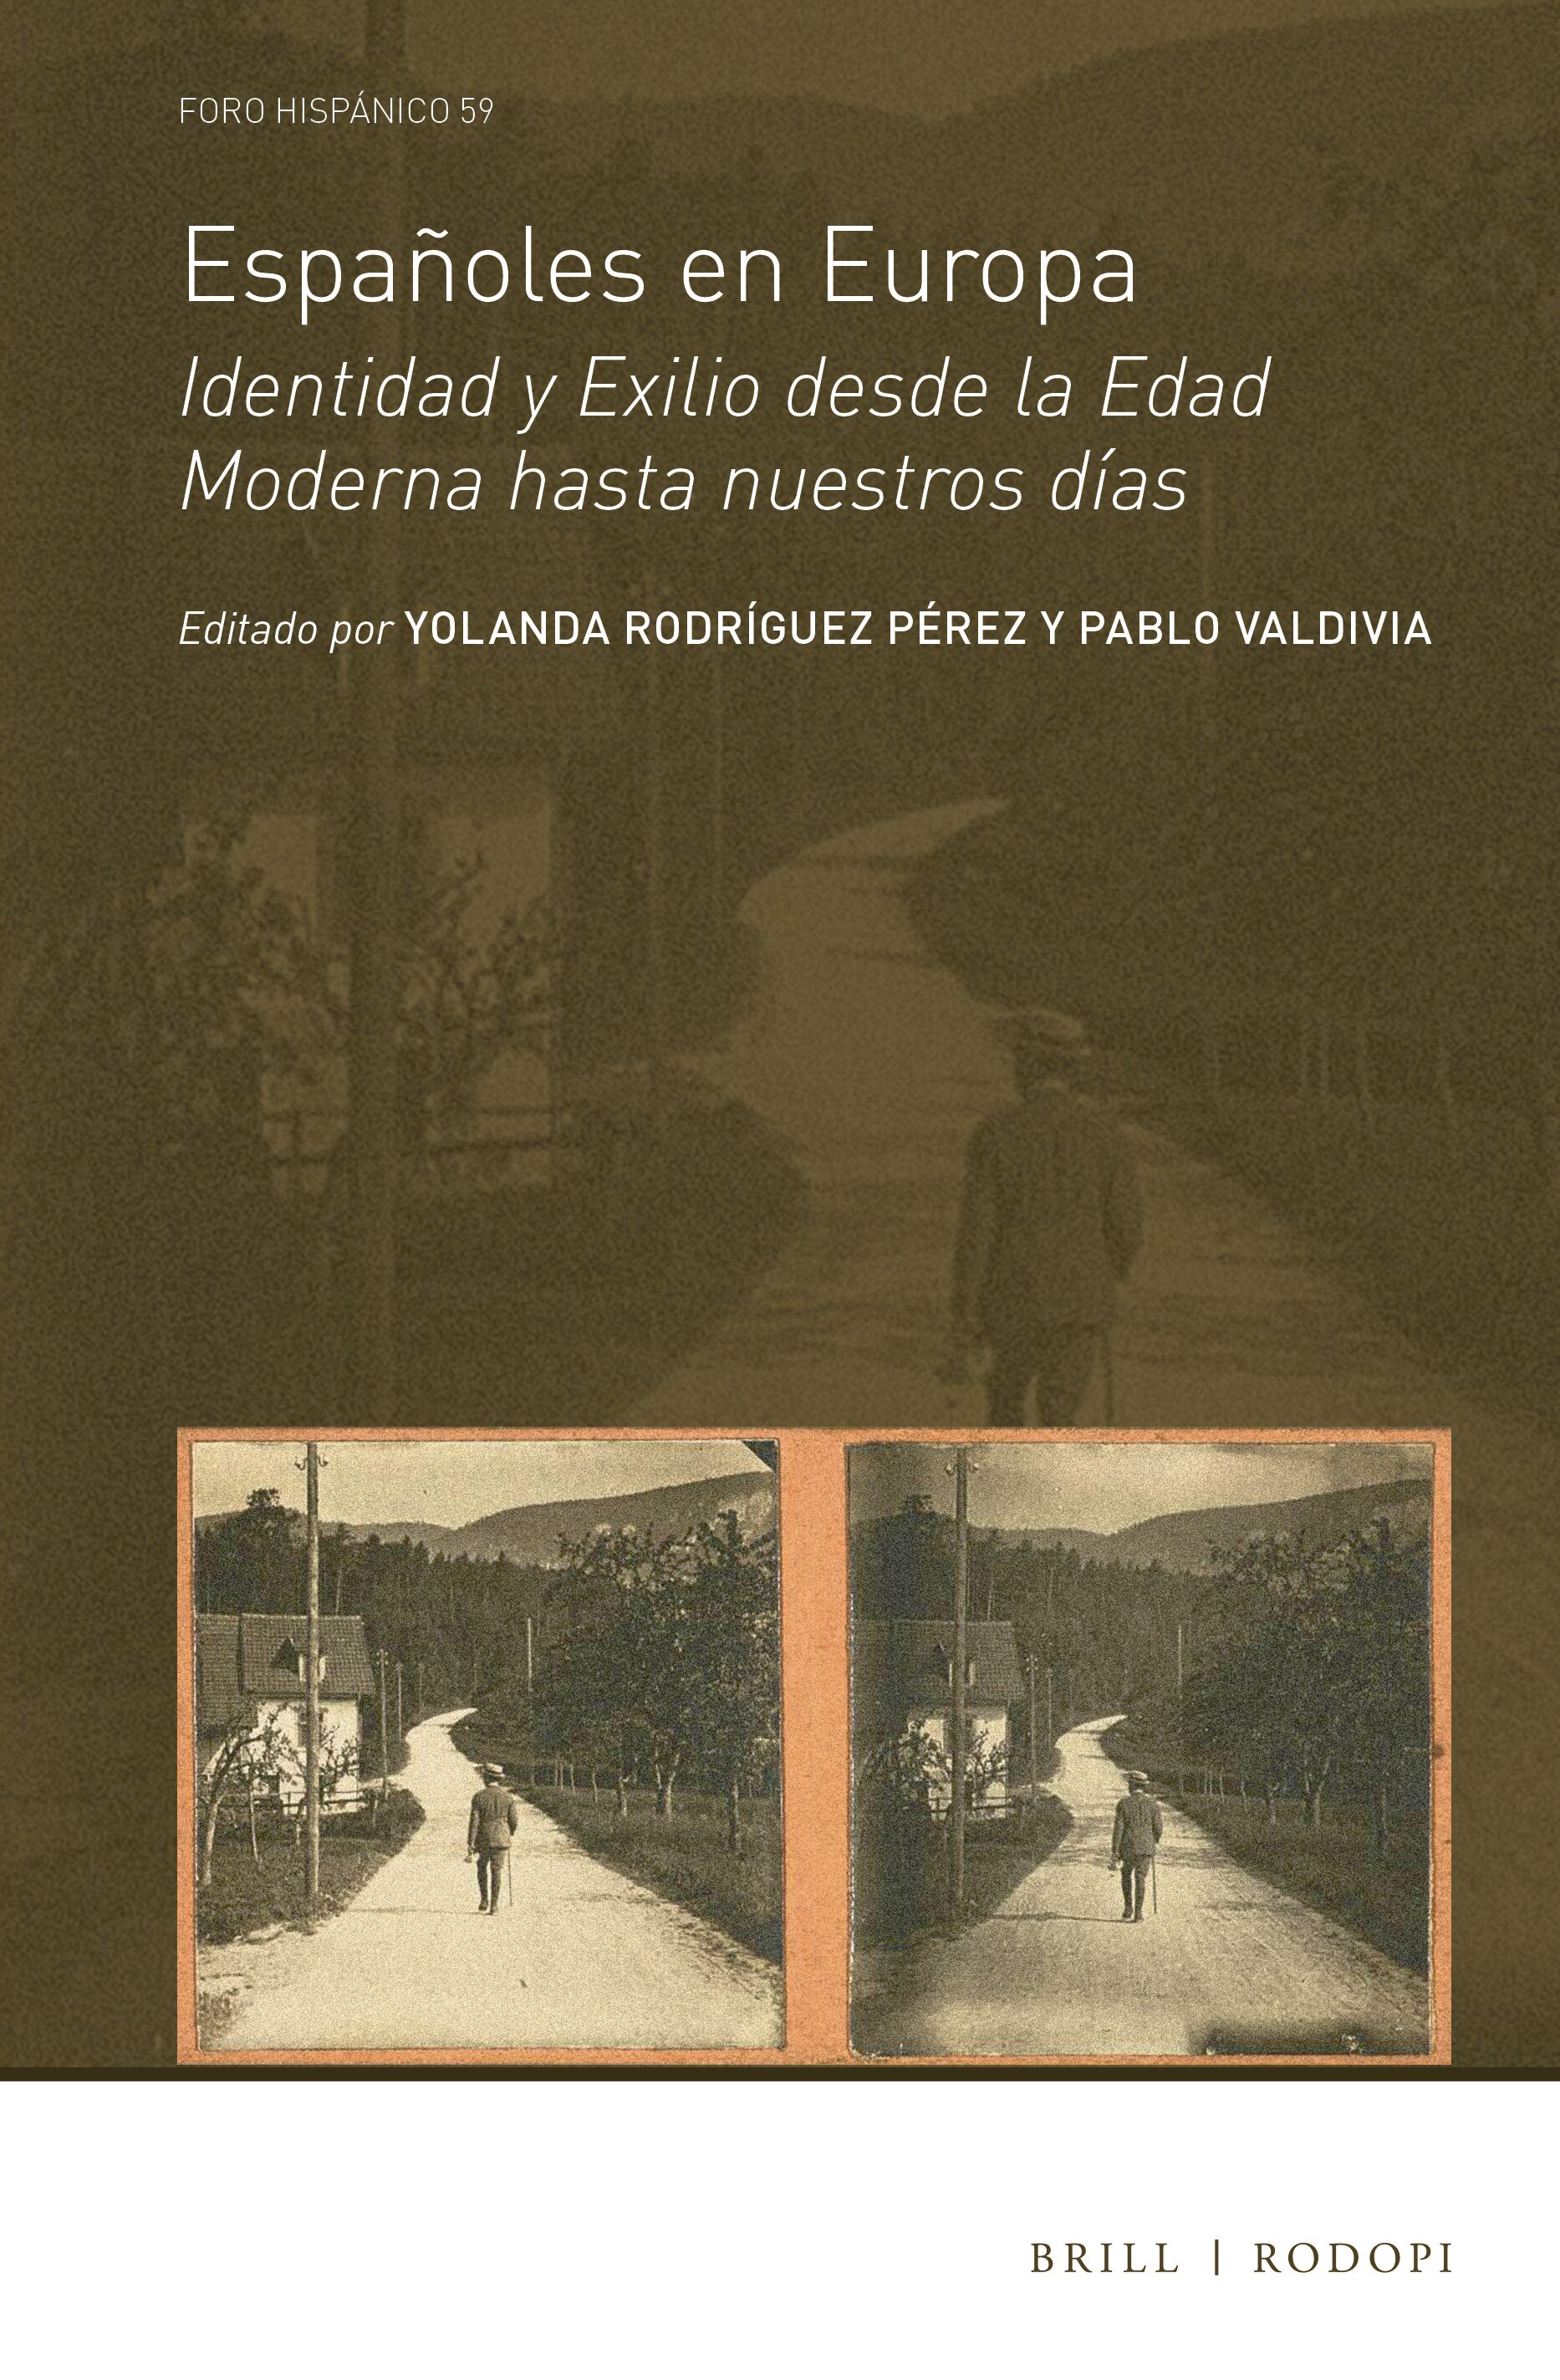 Imagen de portada del libro Españoles en Europa